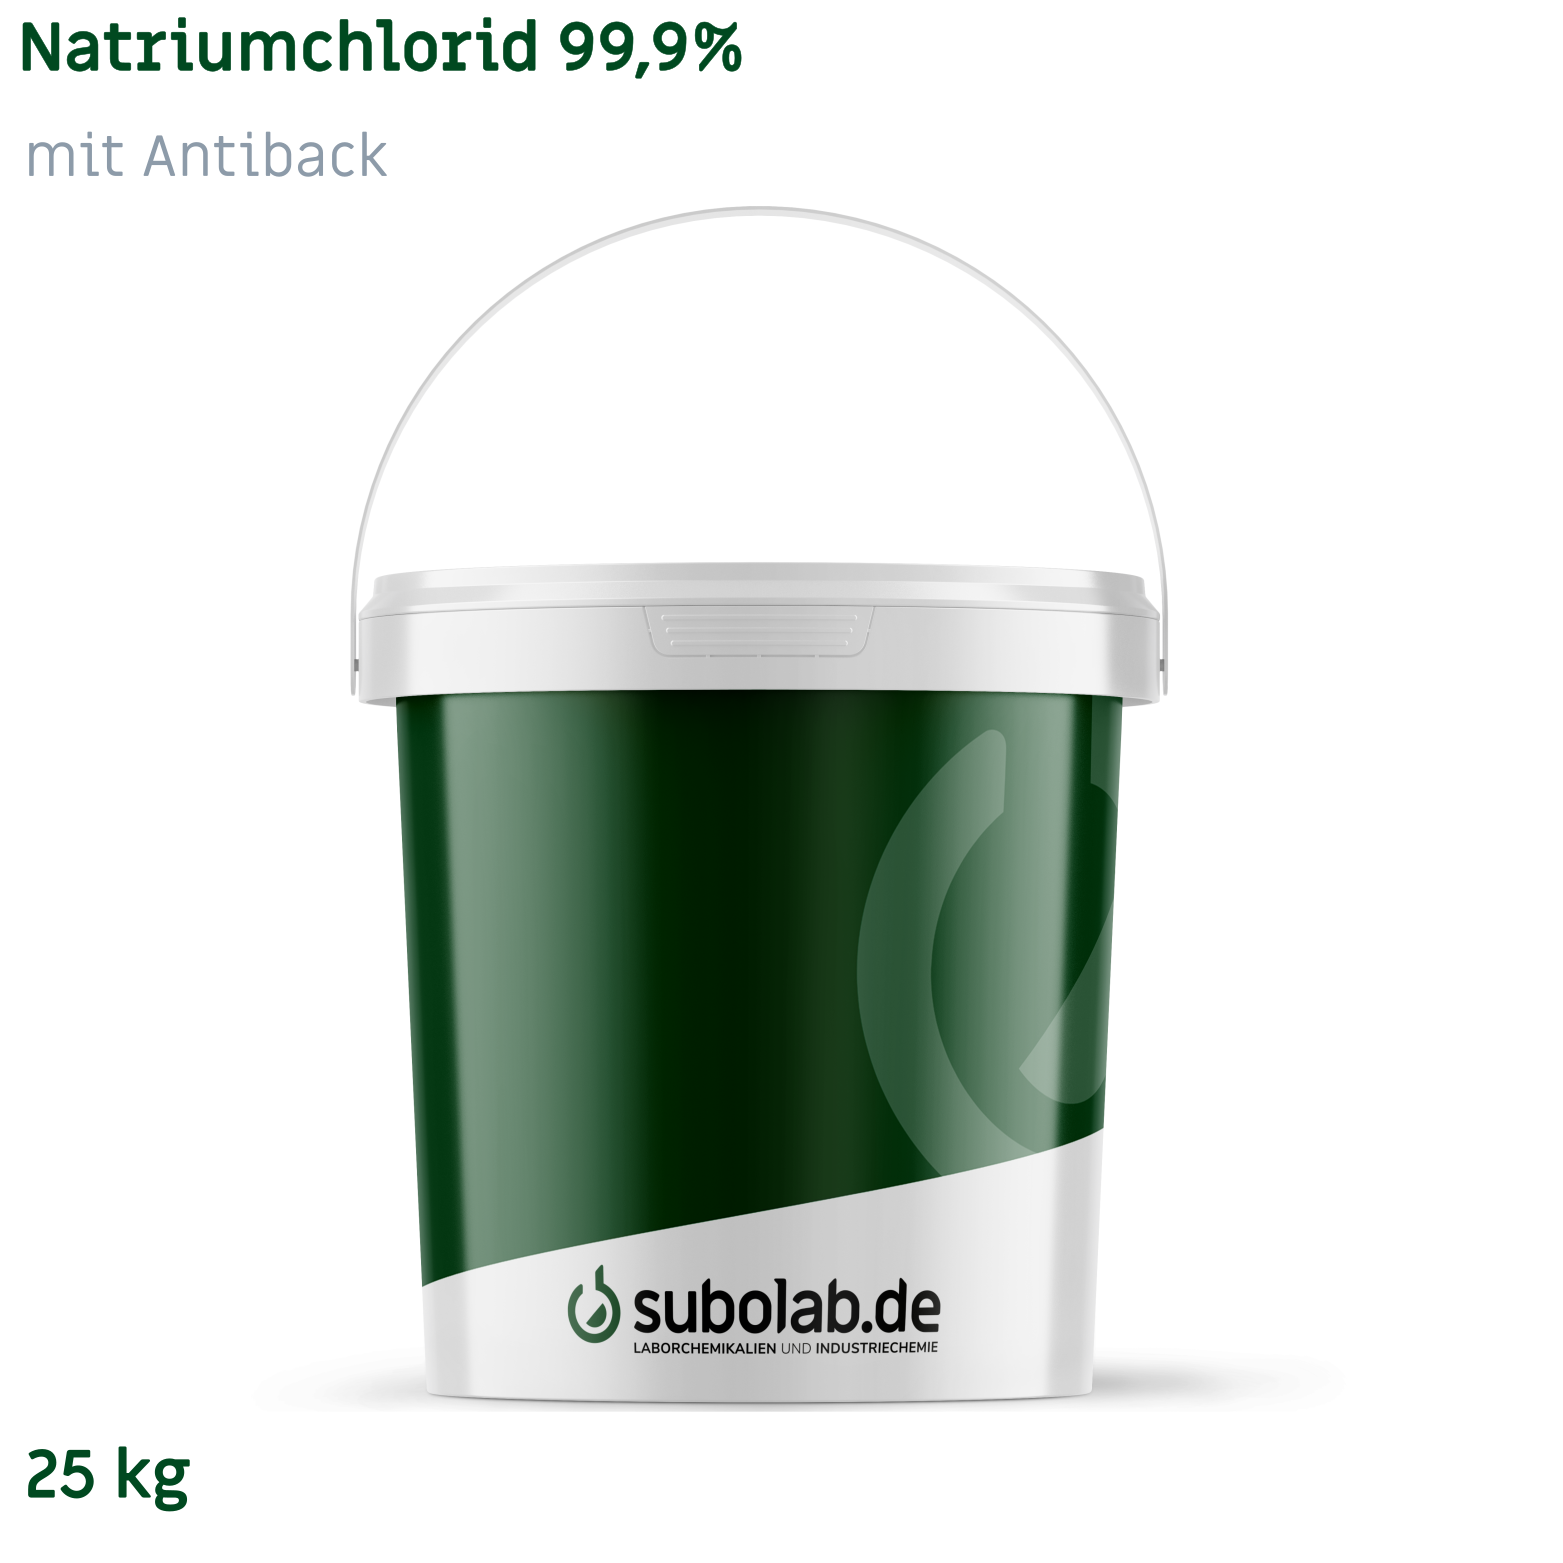 Bild von Natriumchlorid 99,9% mit Antiback (25 kg)